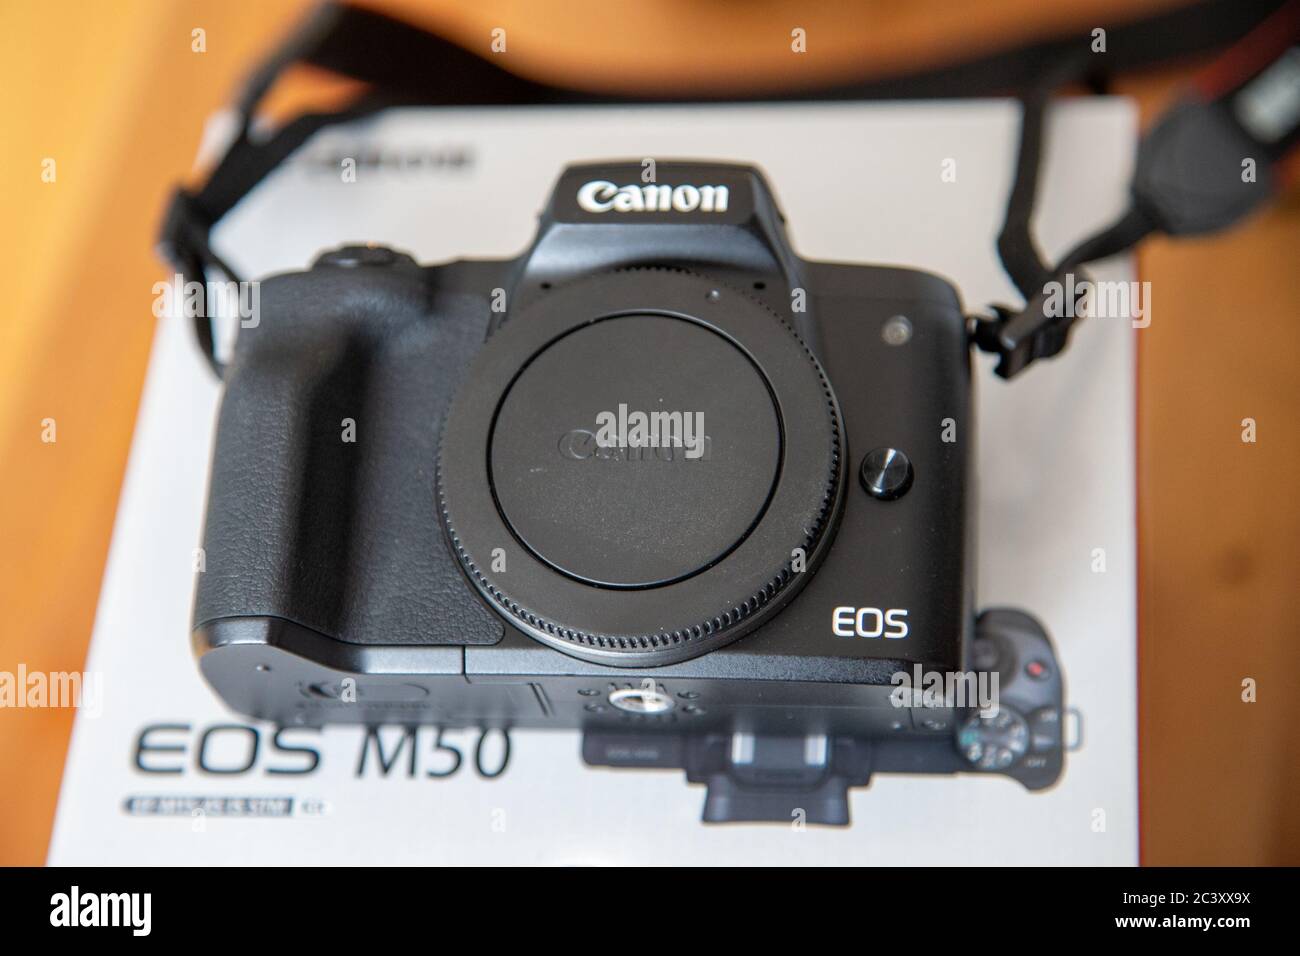 Una fotocamera digitale mirrorless Canon EOS M50 si trova sulla confezione del prodotto senza un obiettivo collegato. Foto Stock